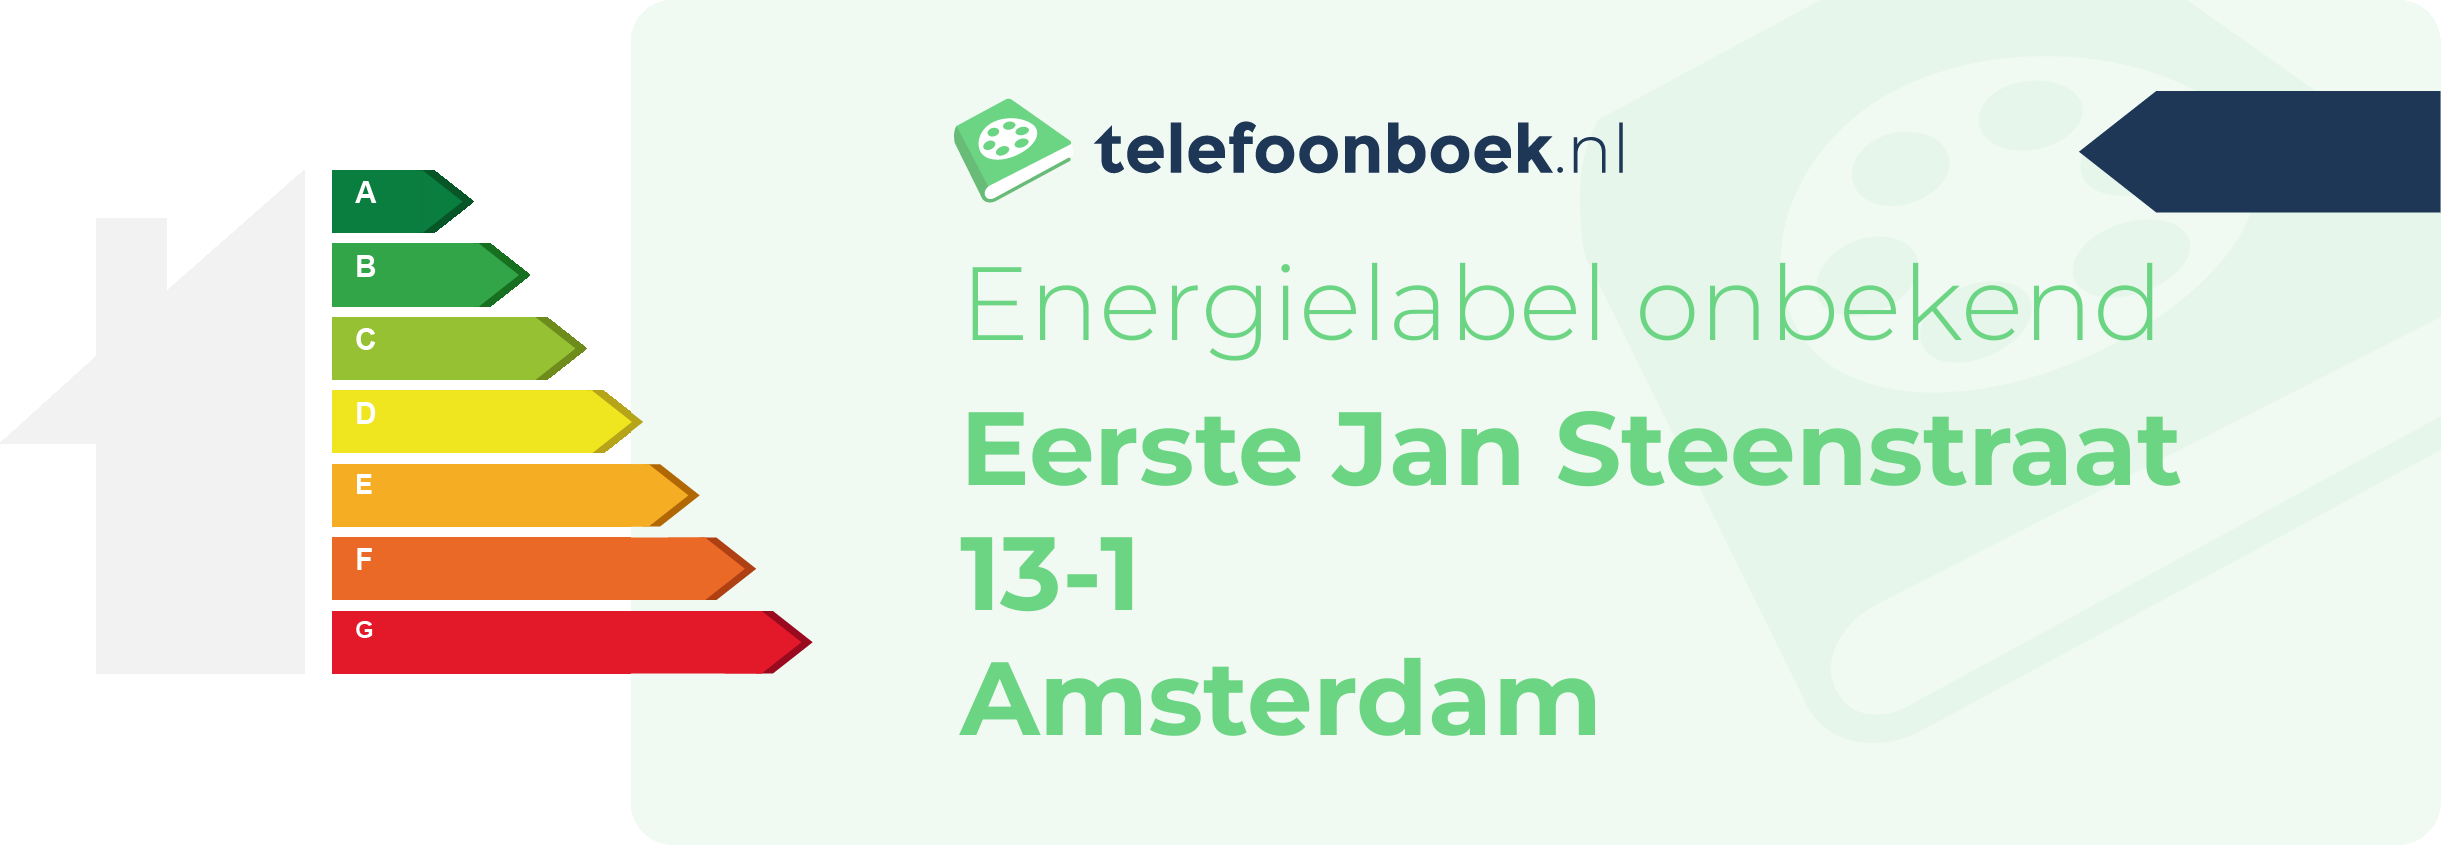 Energielabel Eerste Jan Steenstraat 13-1 Amsterdam